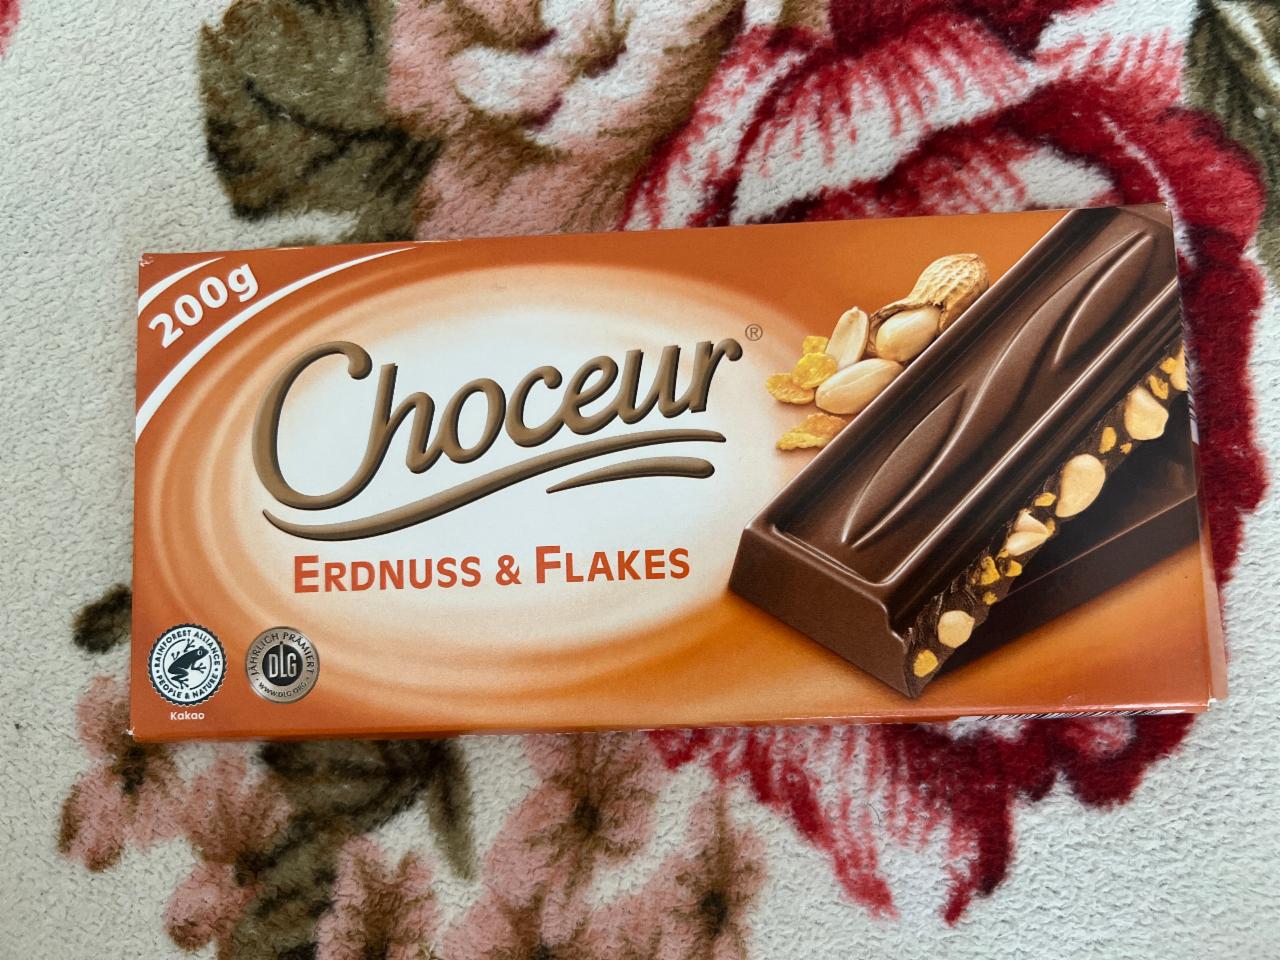 Фото - Шоколад чорний з горіхами і пластівцями Erdnuss & Flakes Choceur